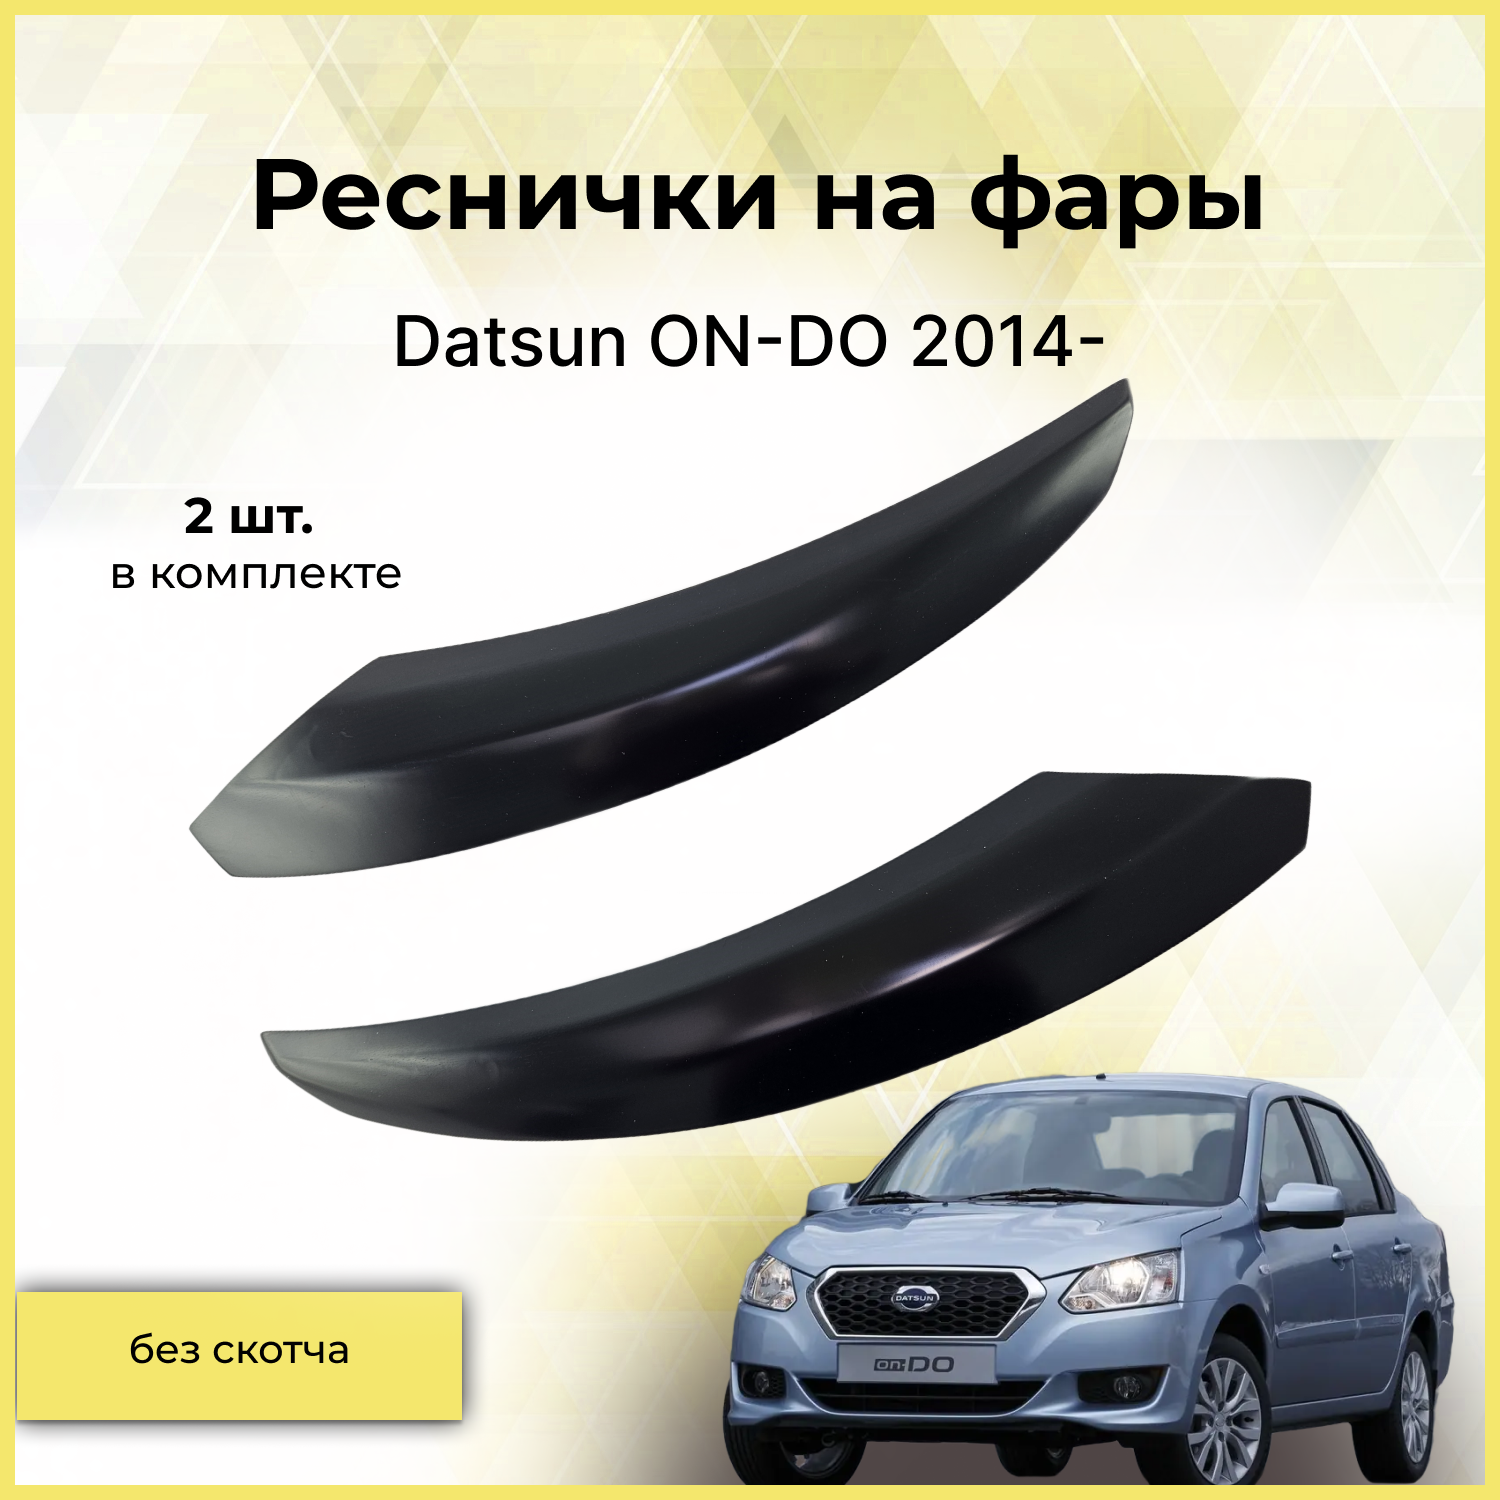 Реснички на фары / Накладки на передние фары для Datsun ON-DO (Датсун он-ДО) 2014-